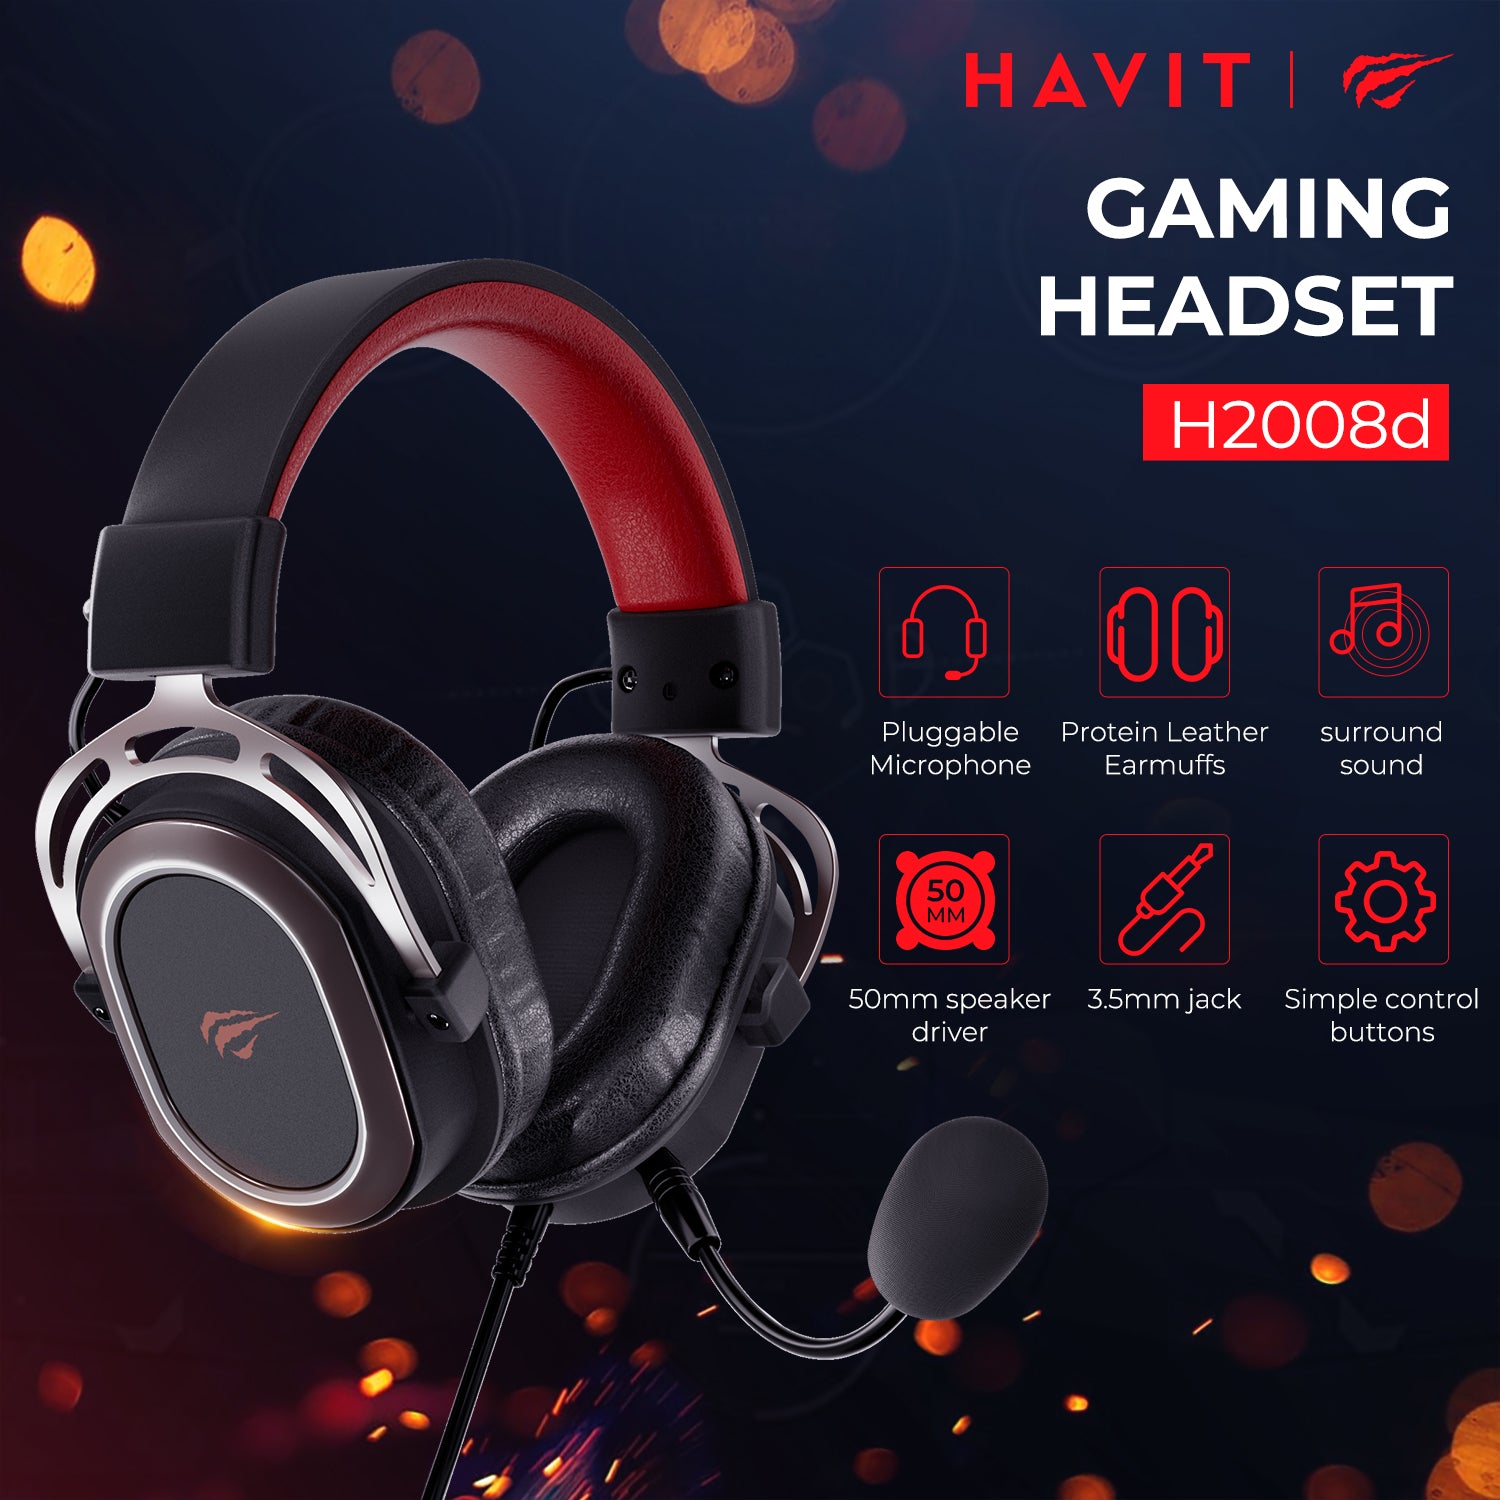 HAVIT H2008D 有線ゲーミング ヘッドセット 3.5mm プラグ 50mm ドライバー サラウンド サウンド HD 取り外し可能なマイク付き